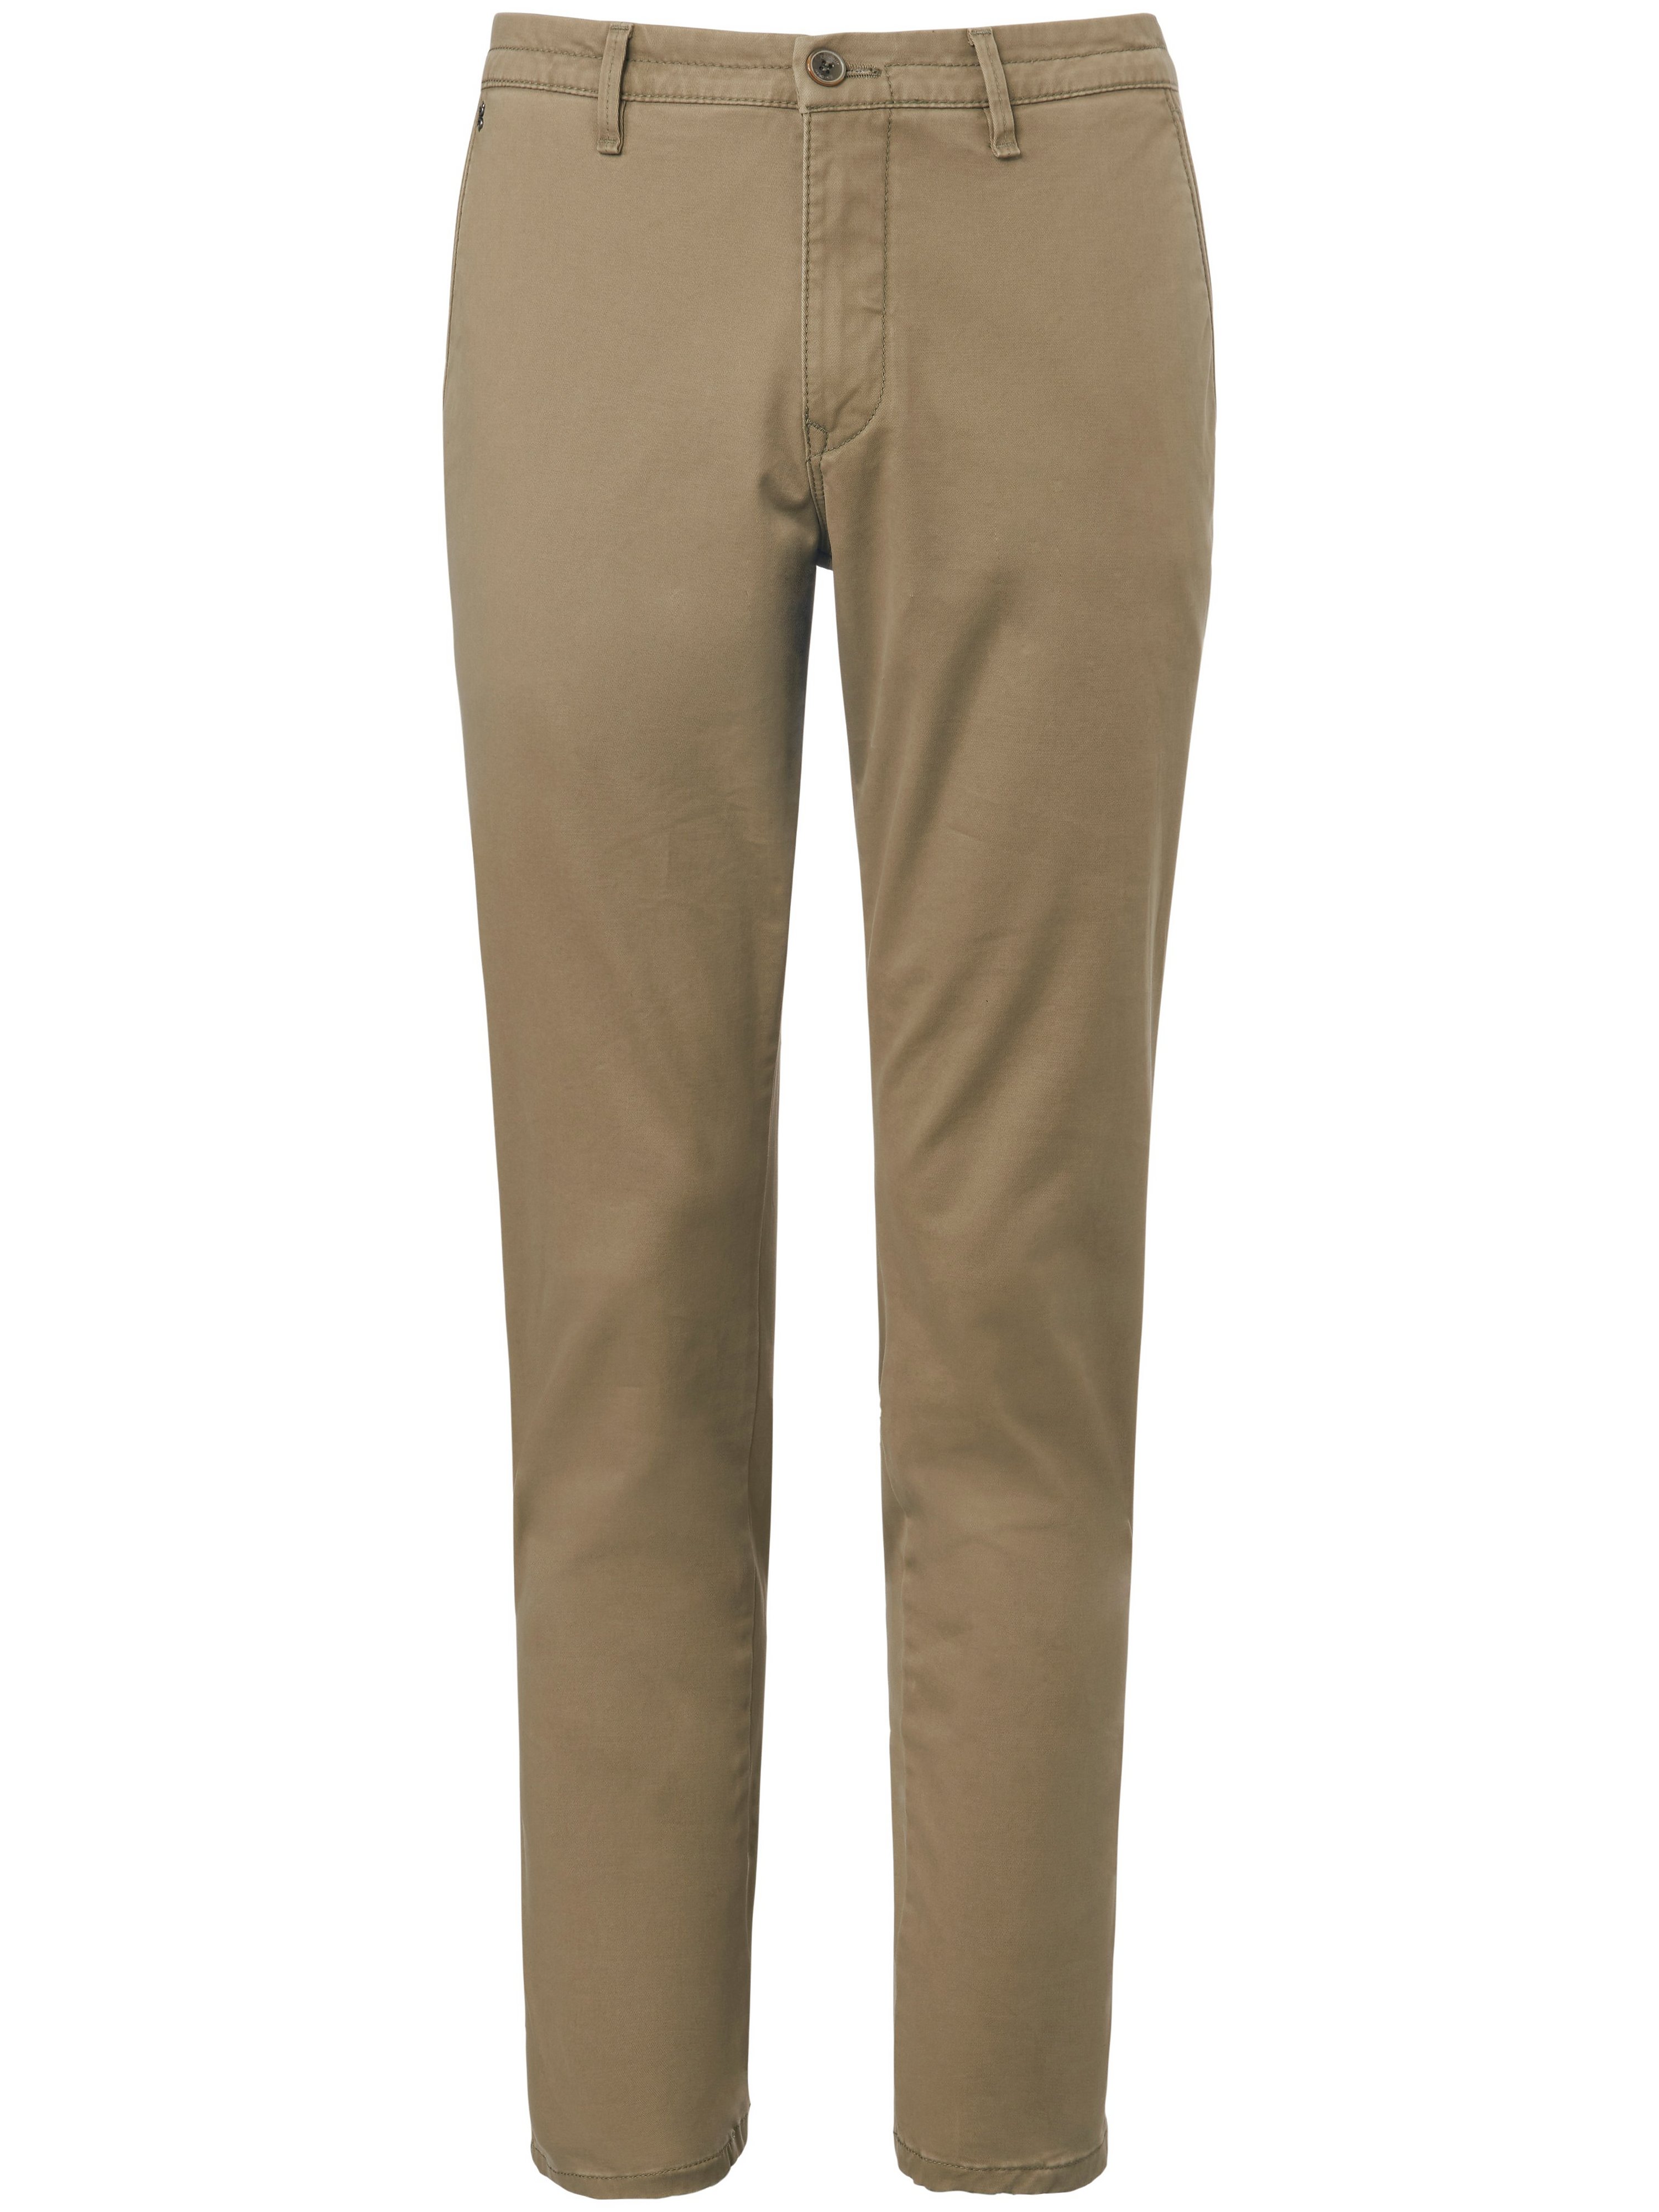 Le pantalon coupe Slim Fit modèle Sterling  gardeur beige taille 28